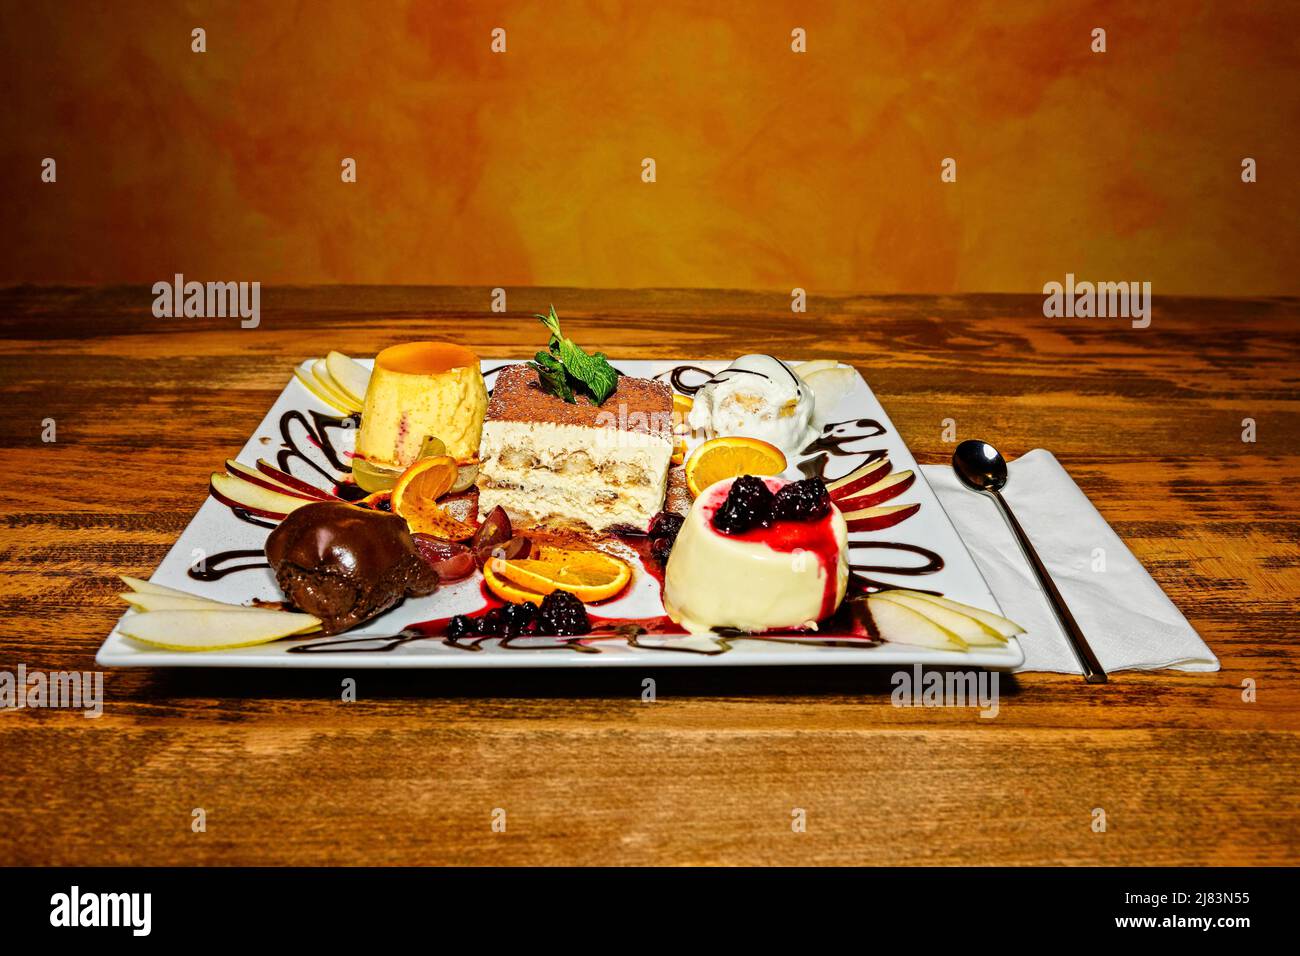 Foodfotografie, Teller mit Auswahl an italienischen Suessspeisen wie Tiramisu, Profiteroles und Panna Cotta auf hoelzernem Tisch Stock Photo